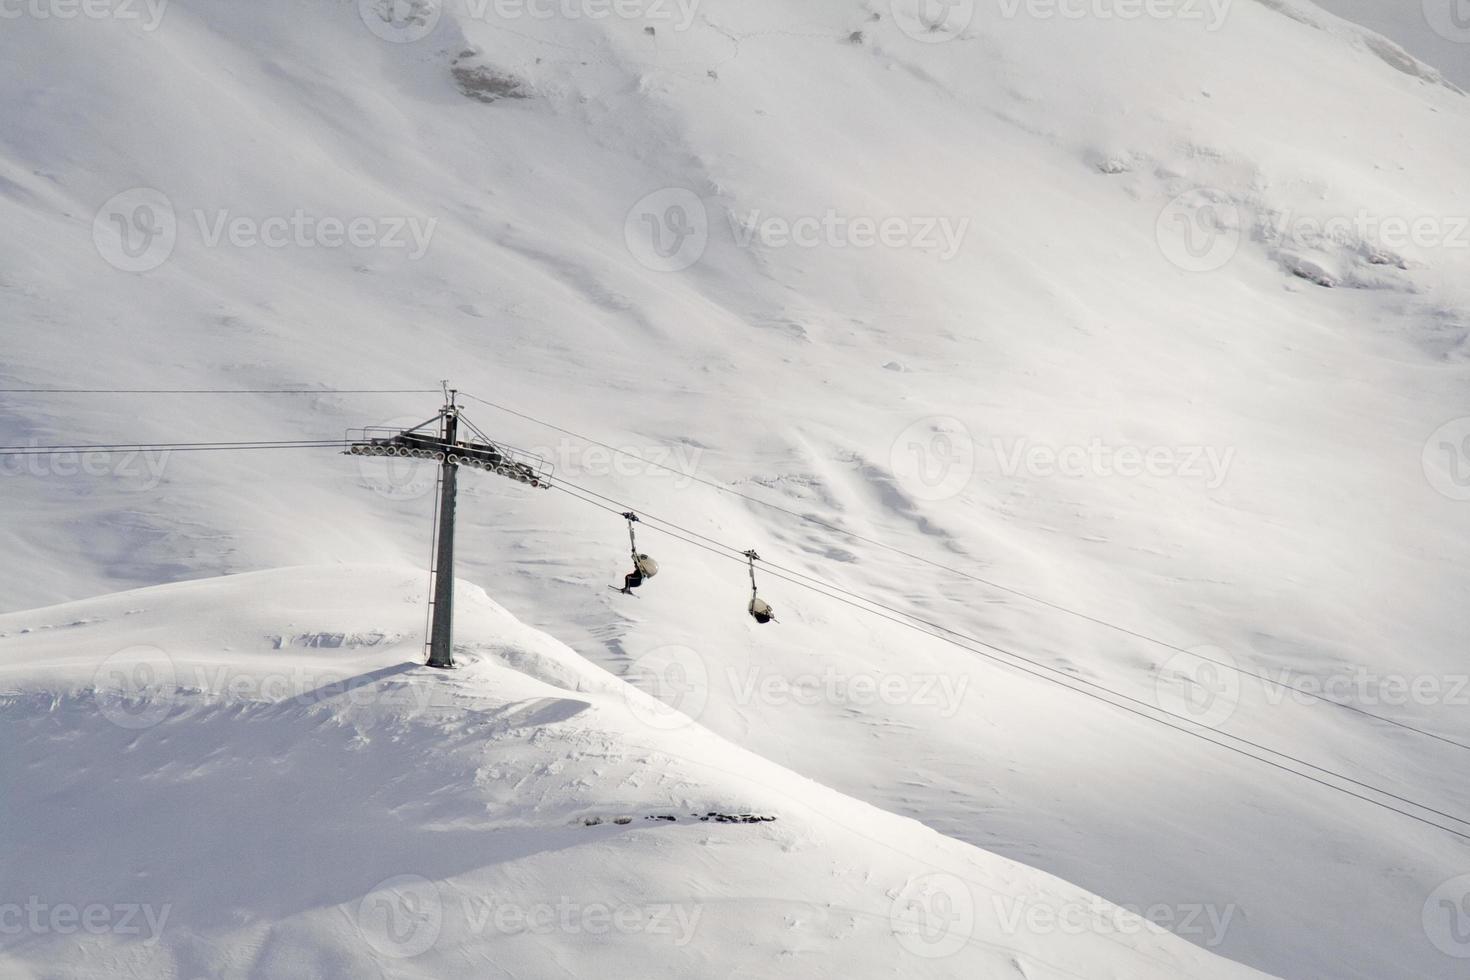 télésiège avec skieurs en Suisse, l'hiver. photo